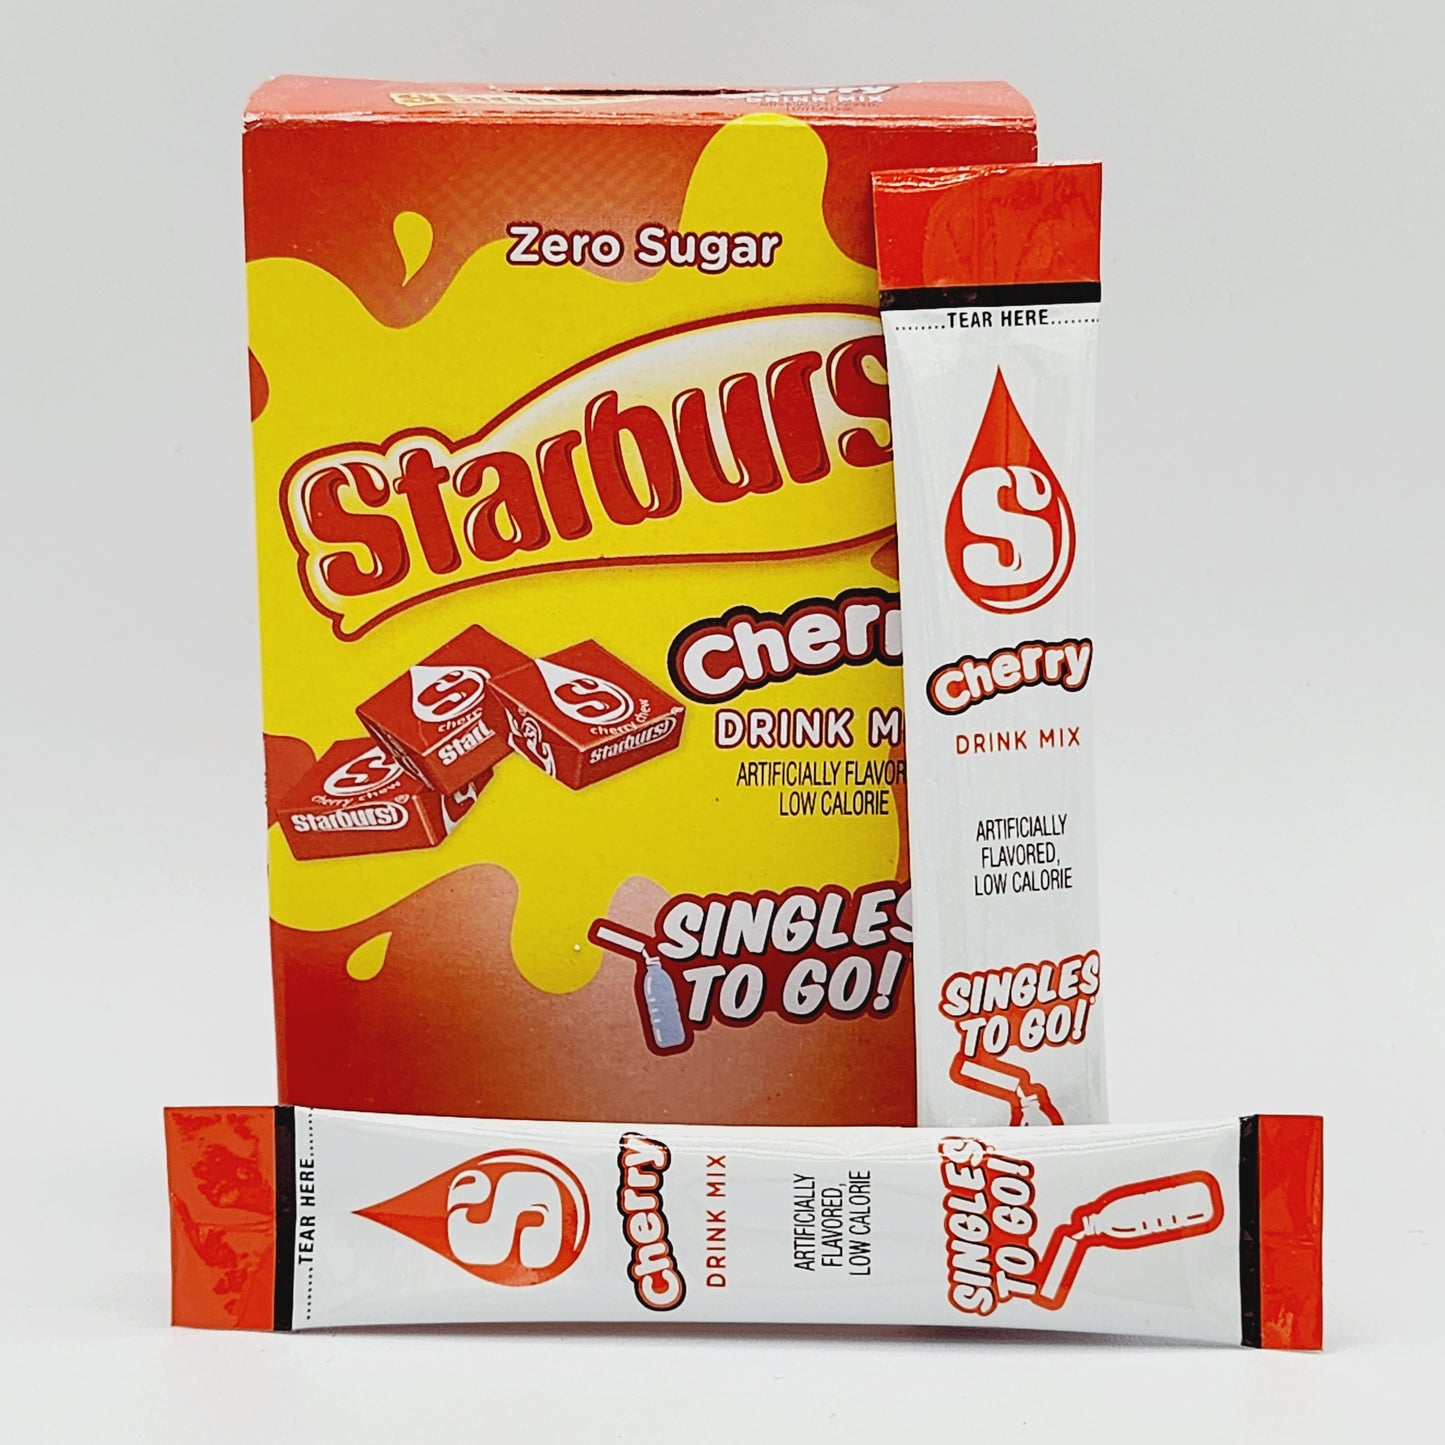 Starburst Drink Mix (Cherry)